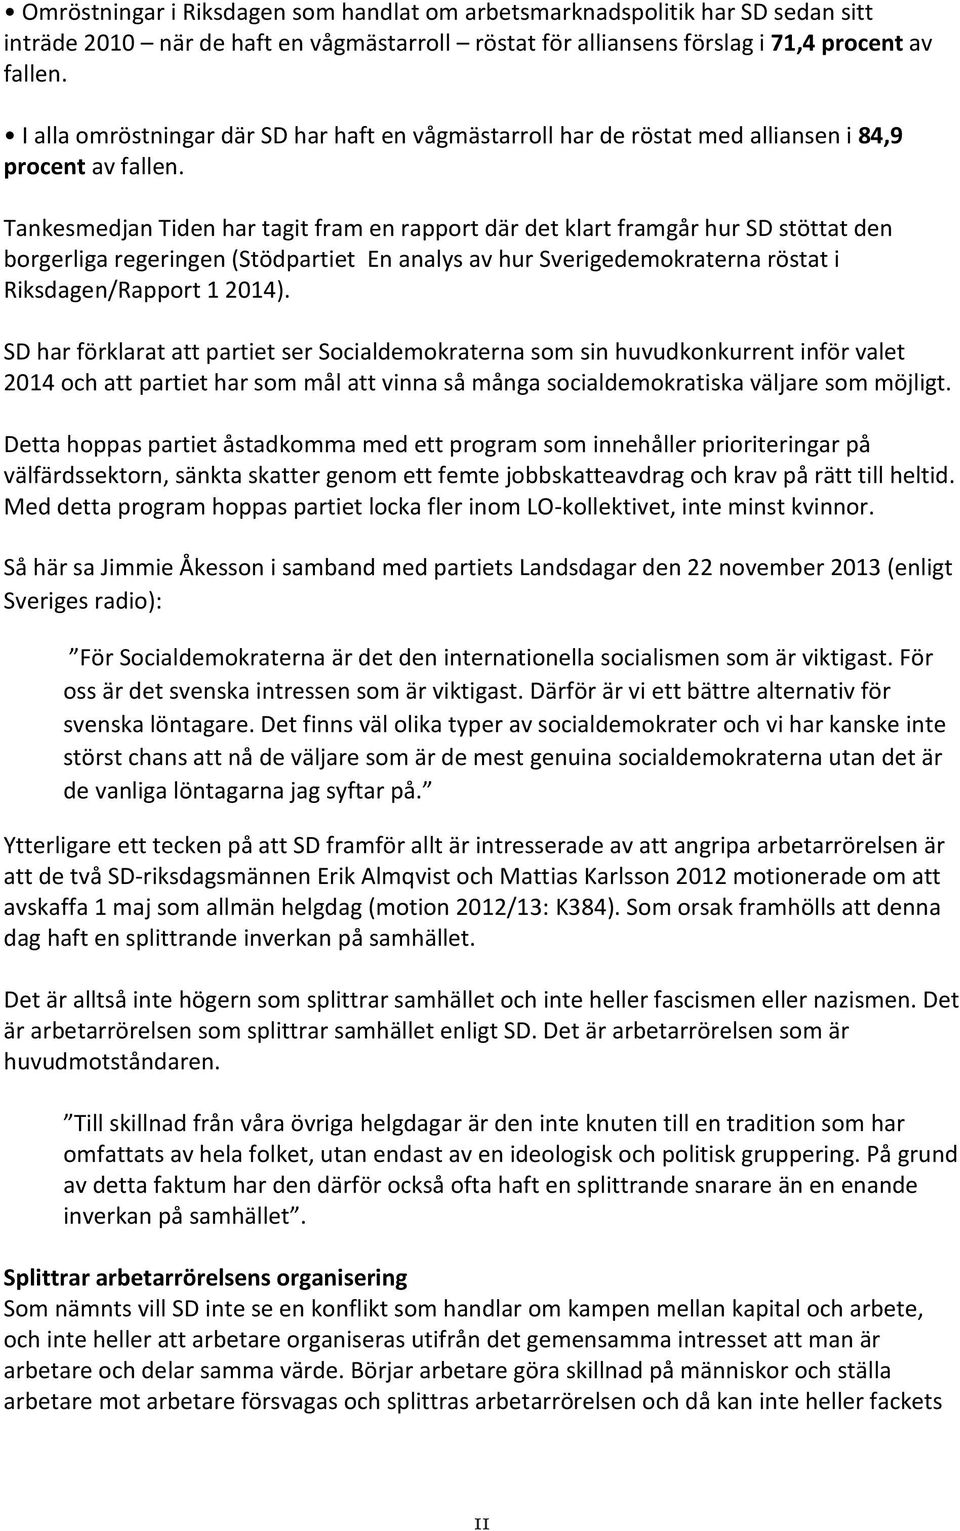 Tankesmedjan Tiden har tagit fram en rapport där det klart framgår hur SD stöttat den borgerliga regeringen (Stödpartiet En analys av hur Sverigedemokraterna röstat i Riksdagen/Rapport 1 2014).